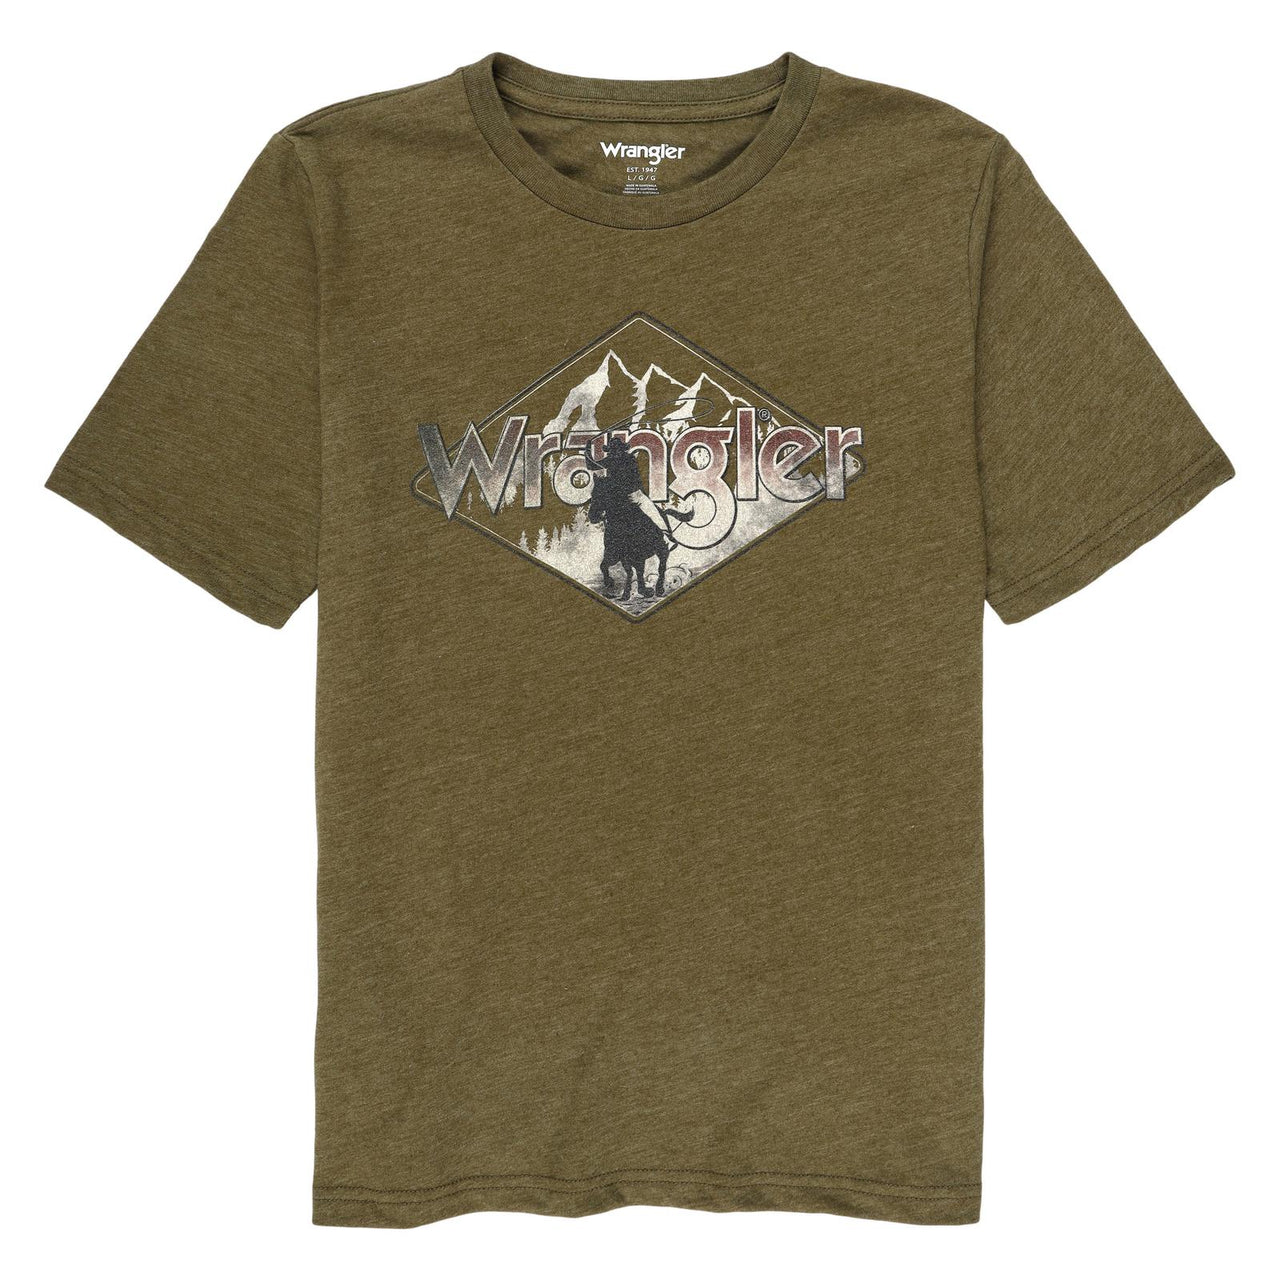 Wrangler Boys Short Sleeve T-Shirt - Capulet Olive